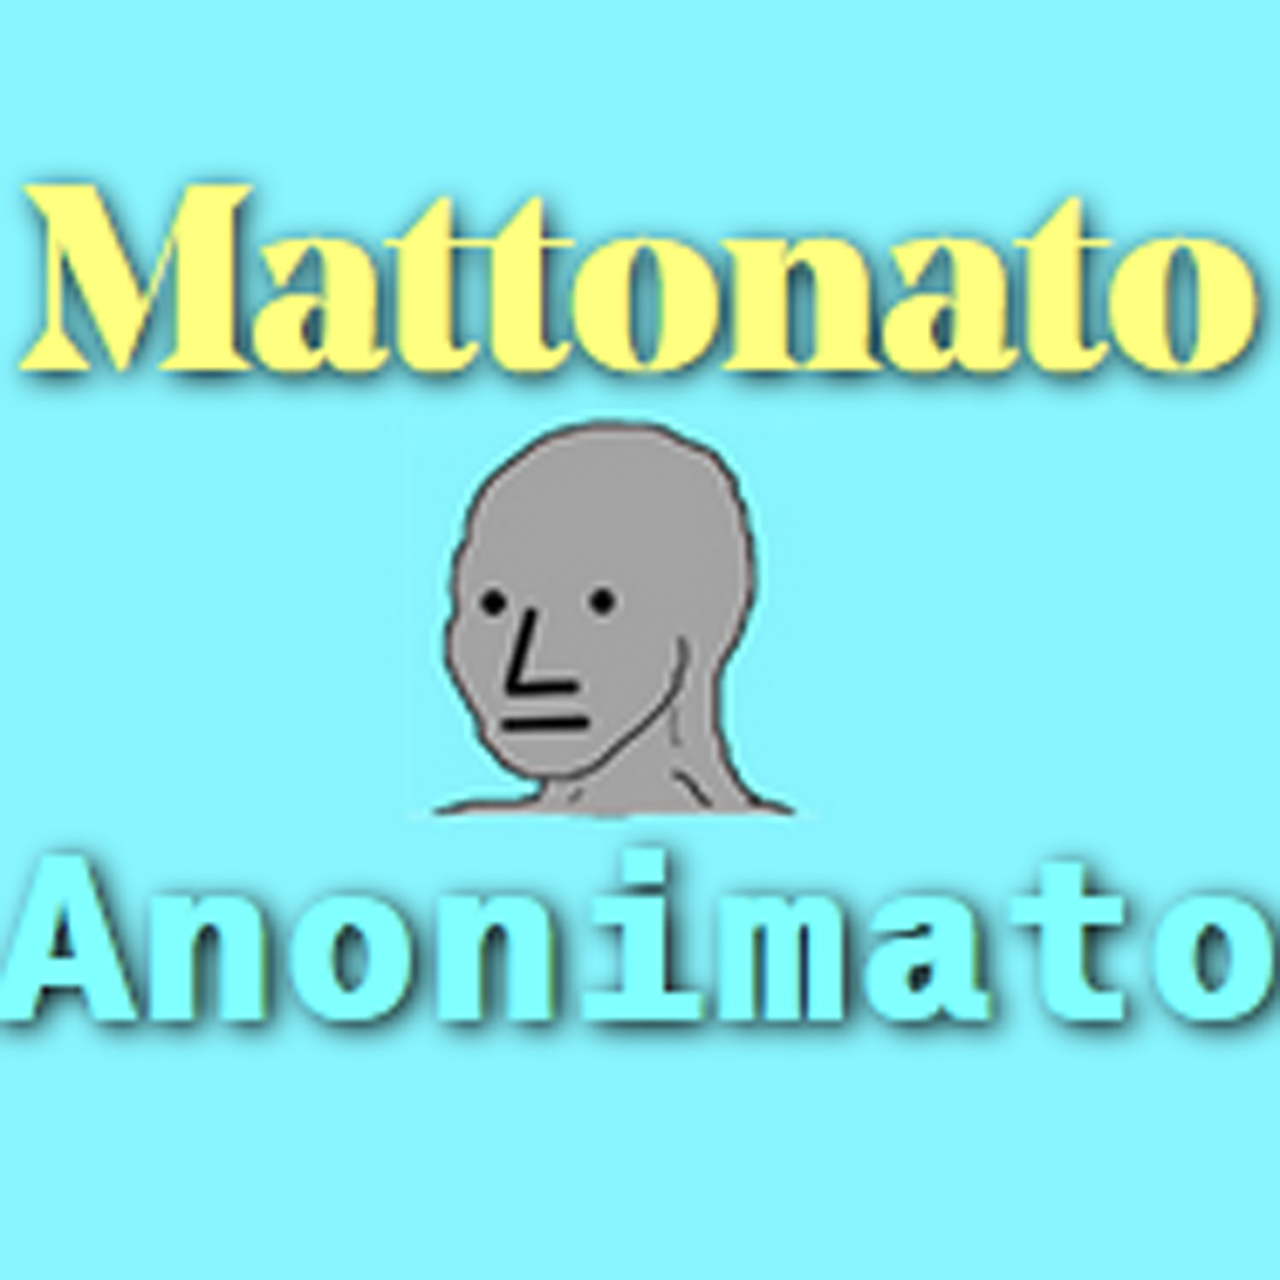 Mattonato Anonimato